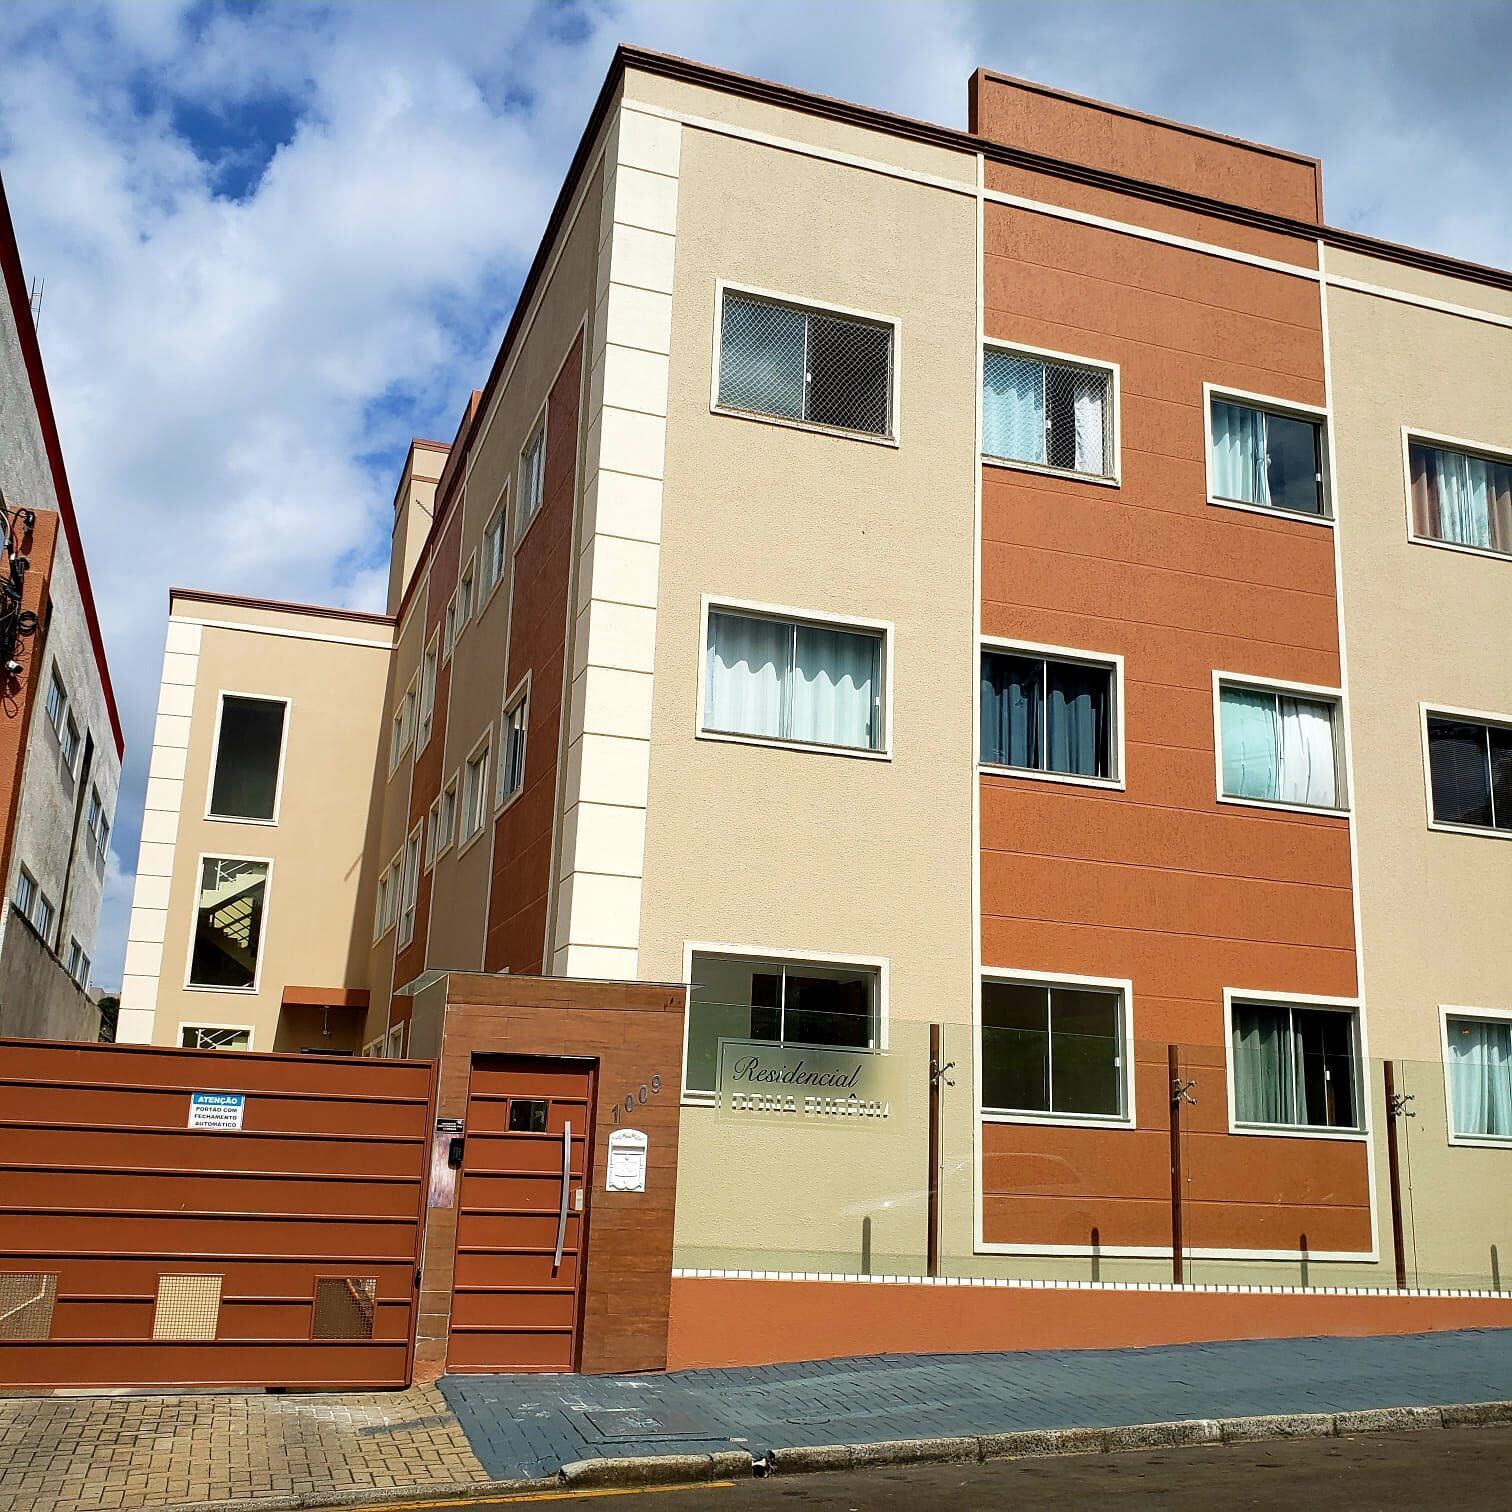 Apartamento com 3 dormitórios à venda,82.81 m , Centro, GUARAP...